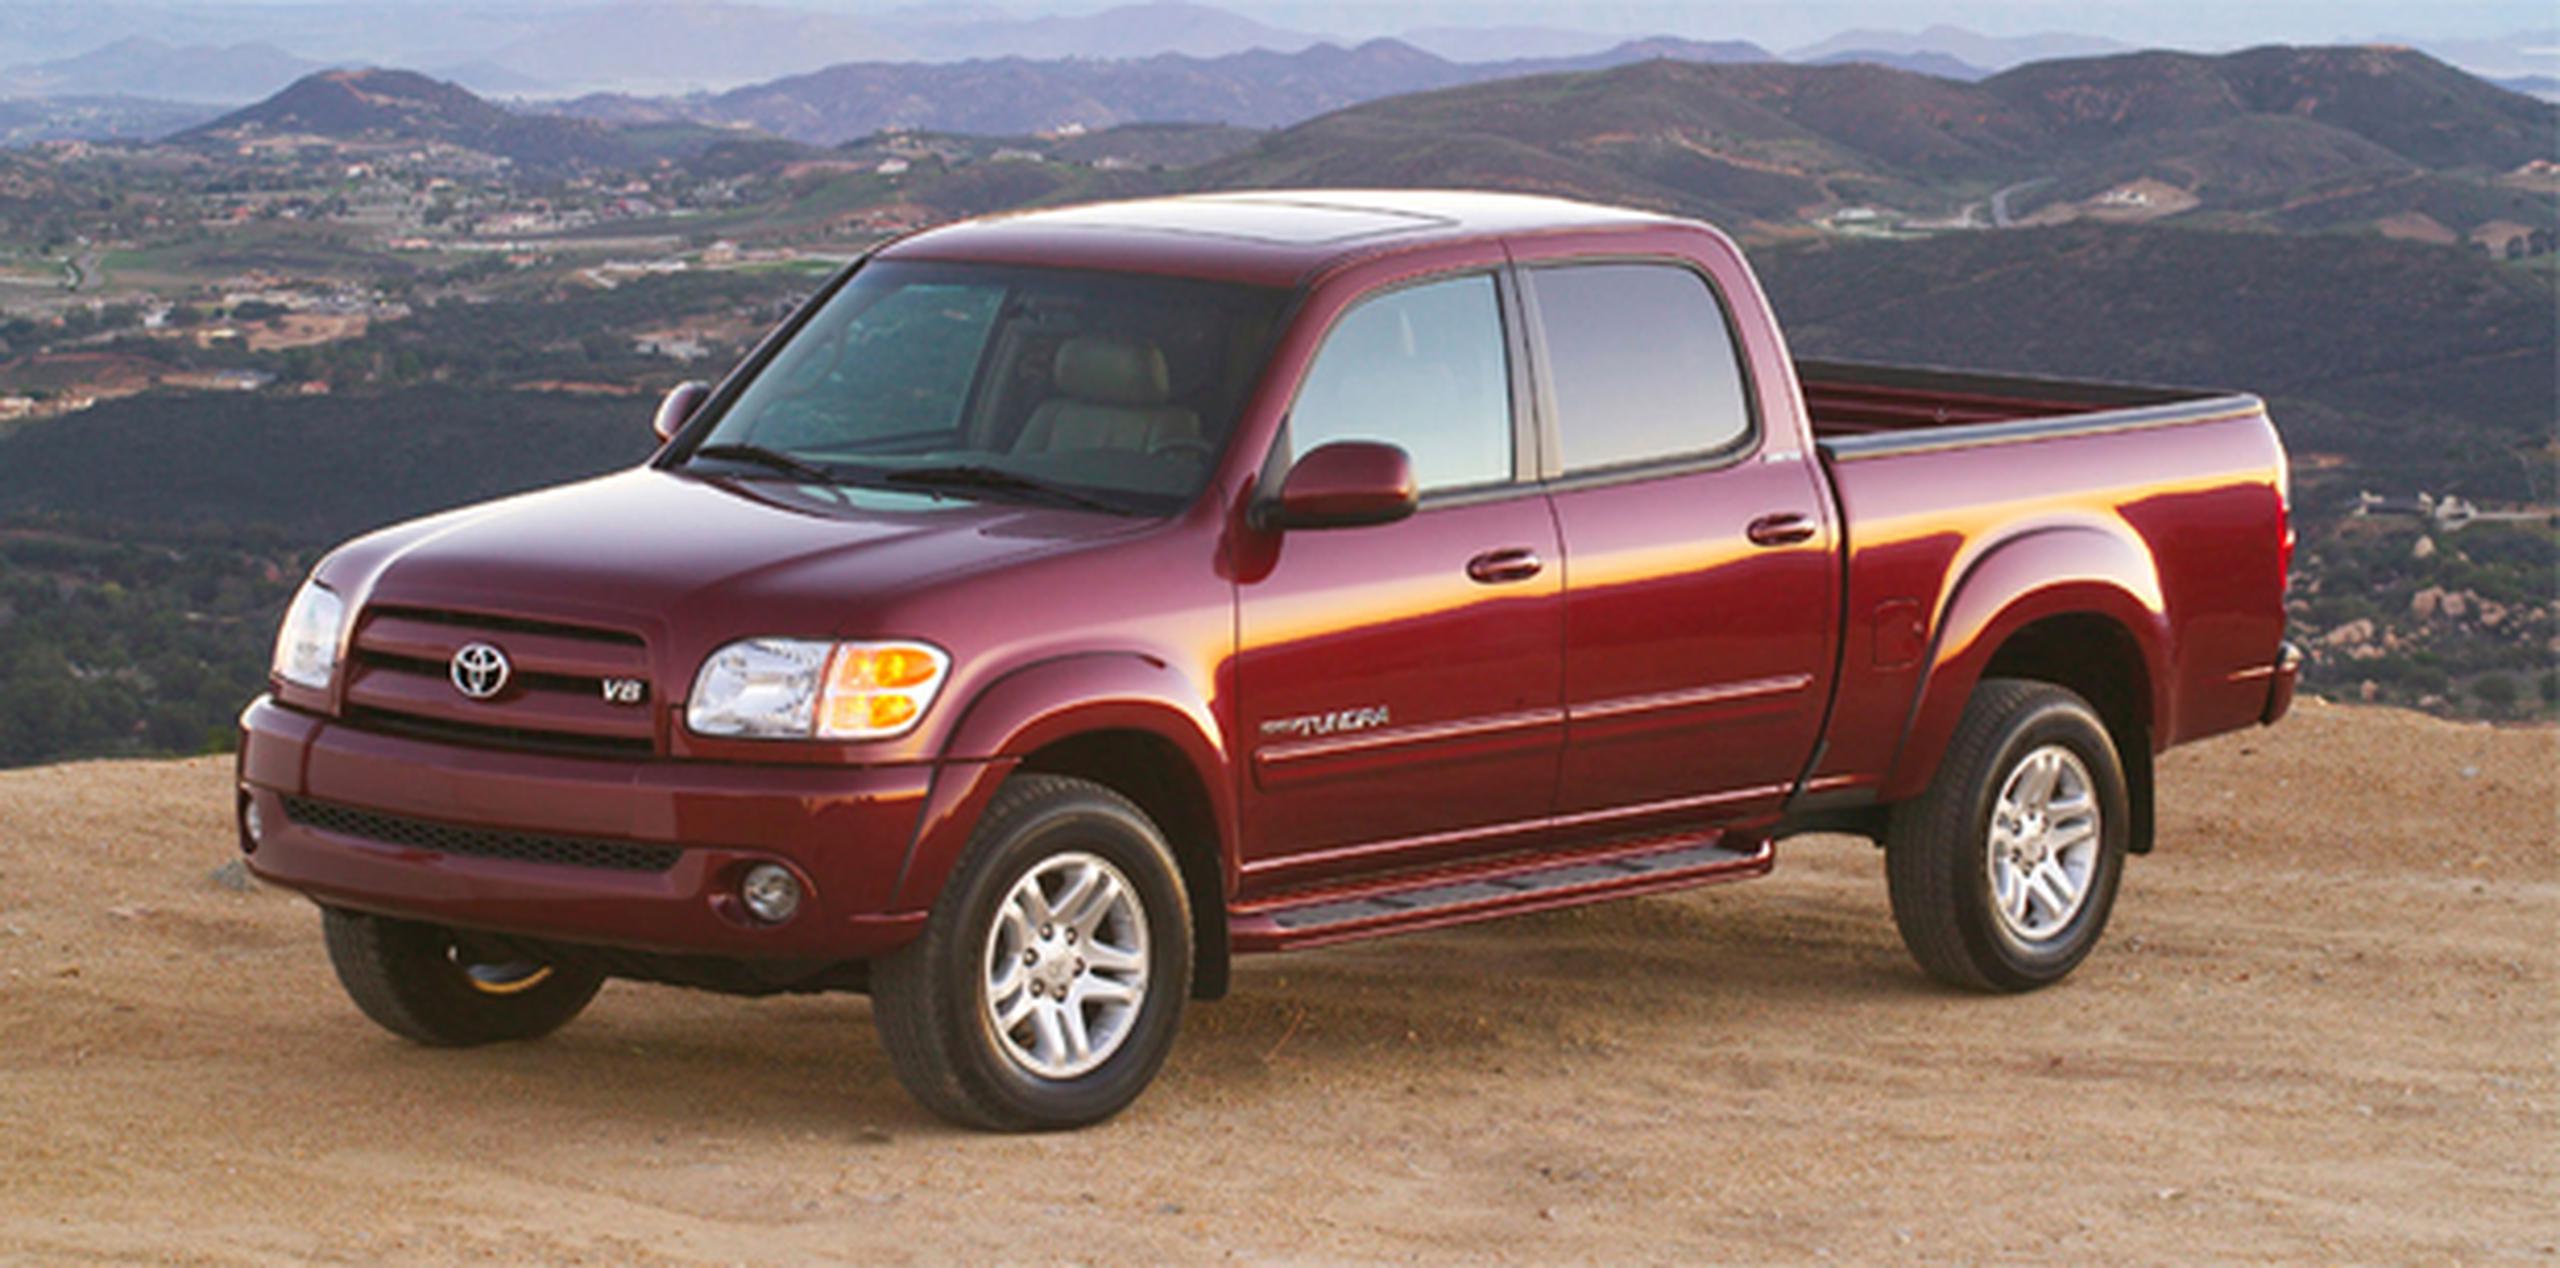 El retiro incluye a unos 20 modelos de Toyota, entre ellos, algunos autos compactos Corolla y camionetas Tundra fabricadas entre 2003 y 2004.